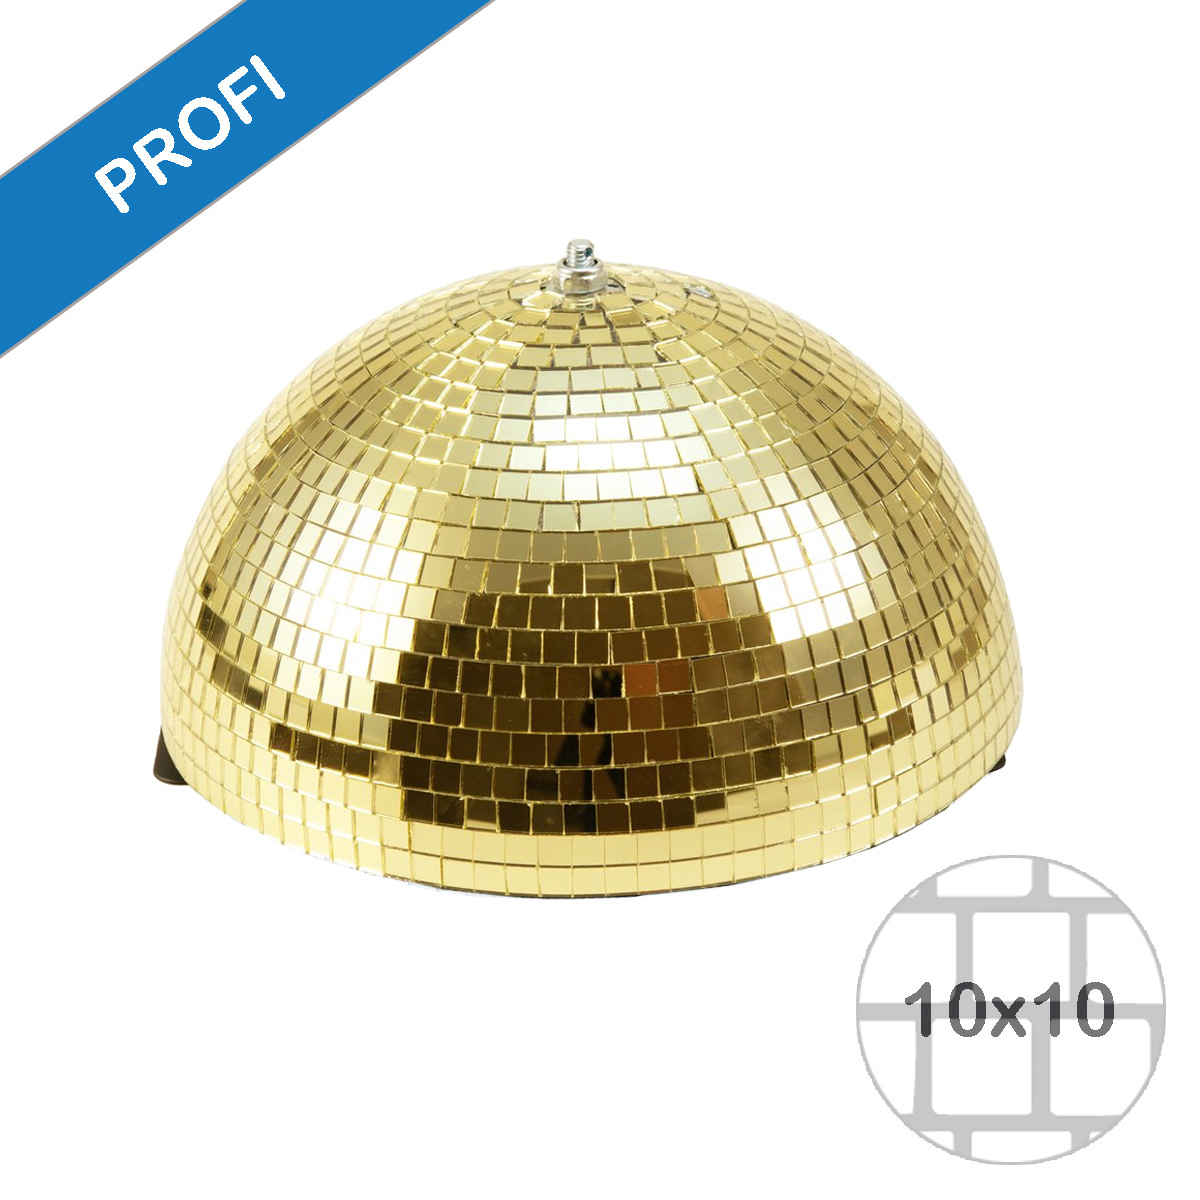 Spiegelkugel halb gold 30cm - für Deckenmontage - Diskokugel Echtglas - 10x10mm Spiegel - PROFI